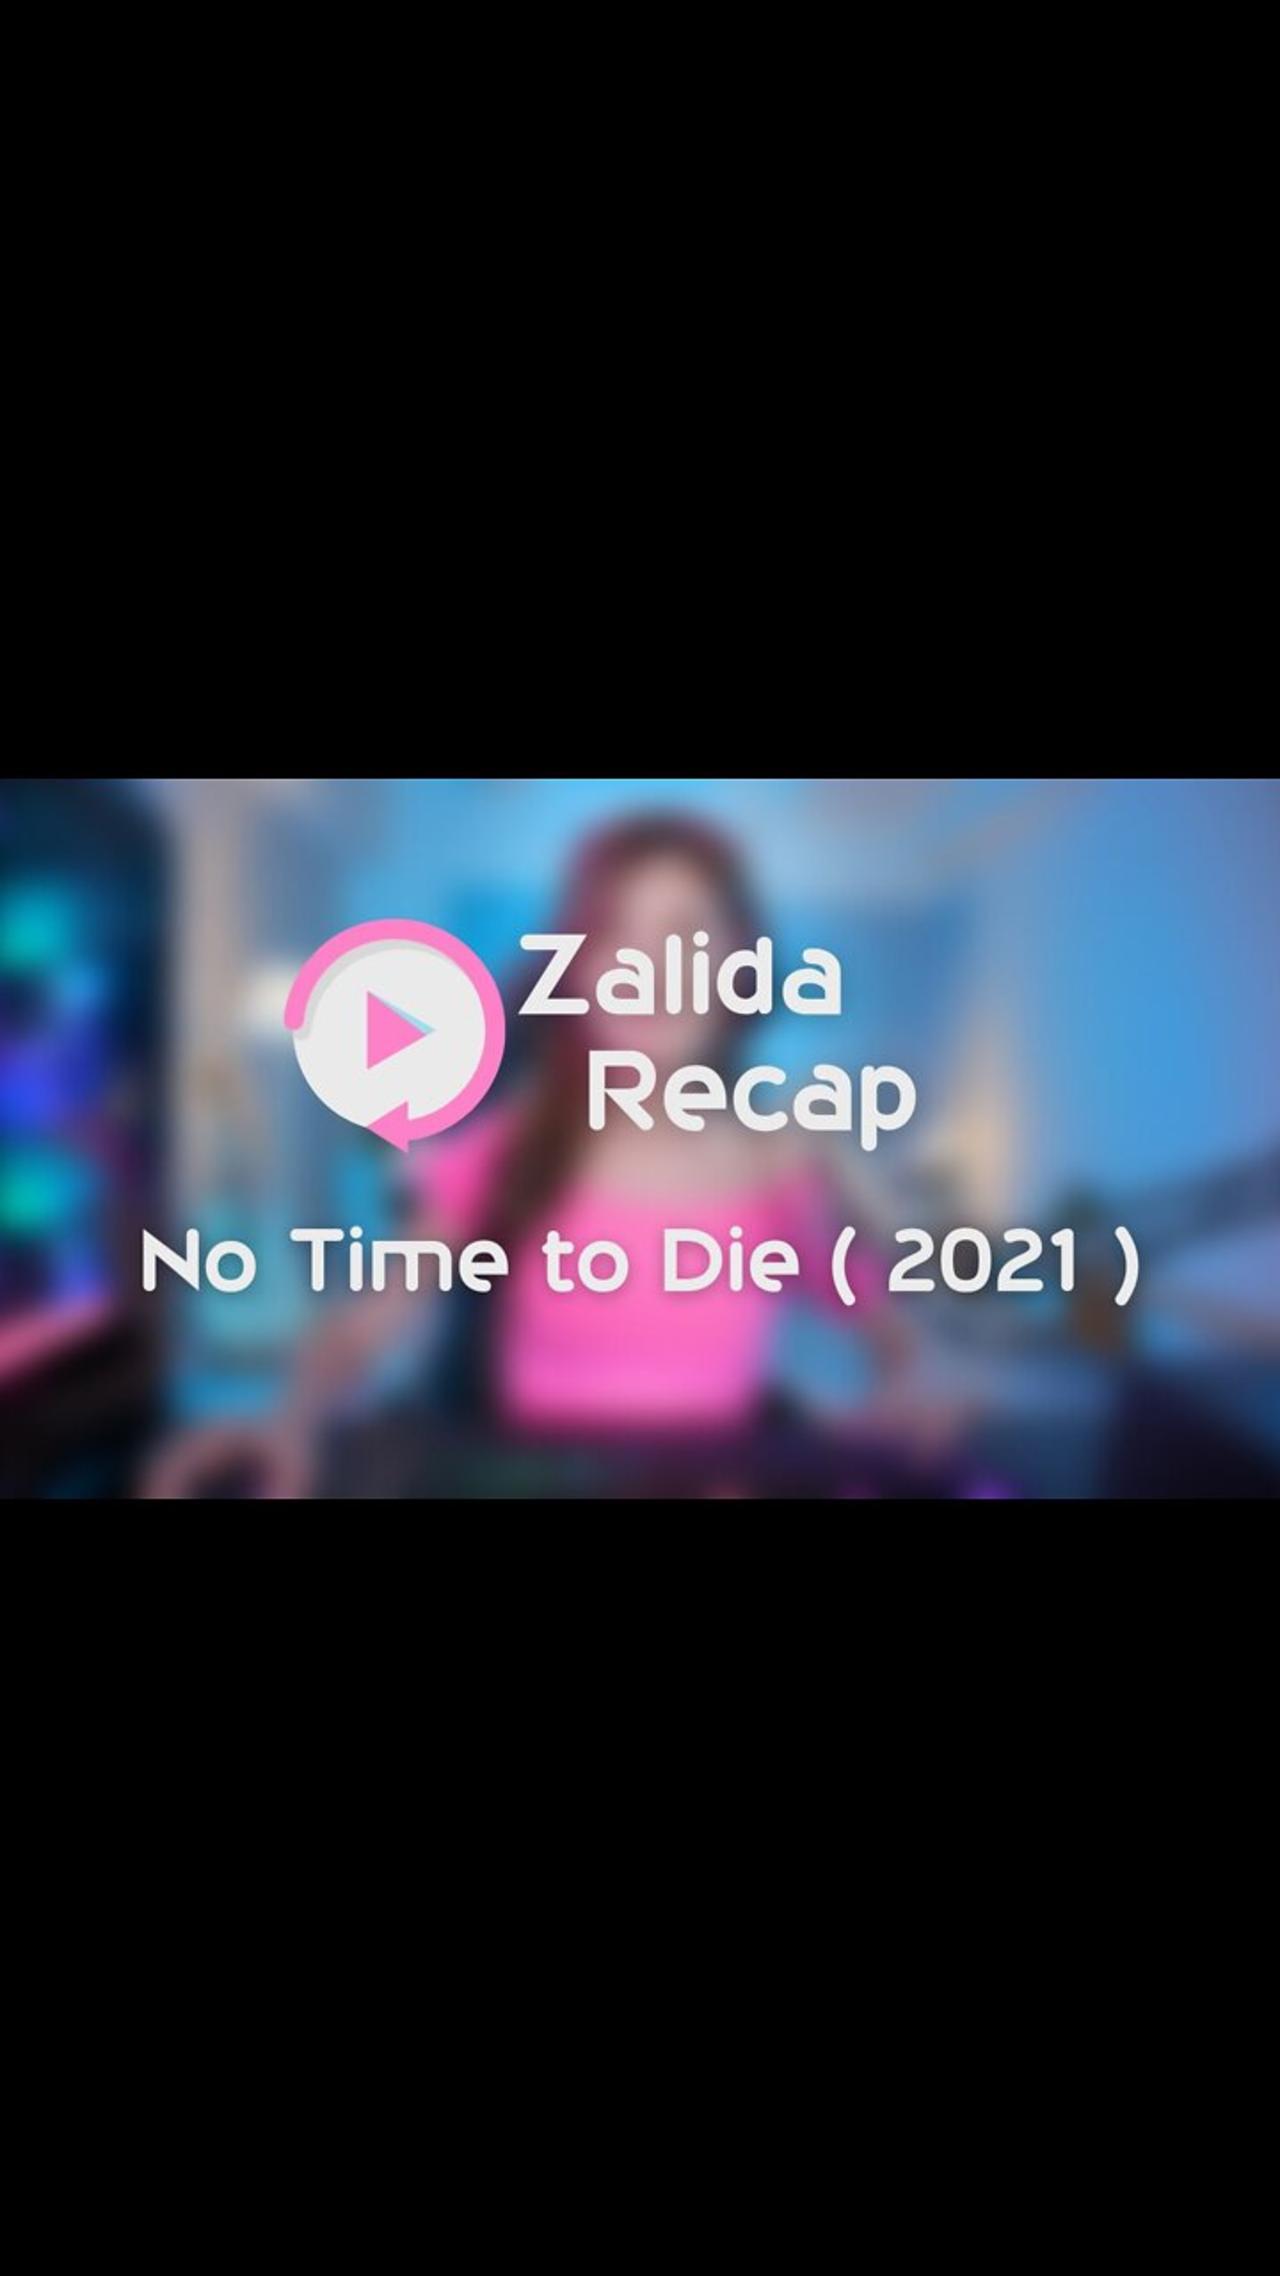 No Time to Die ( 2021 ) - Movie Recap Summary